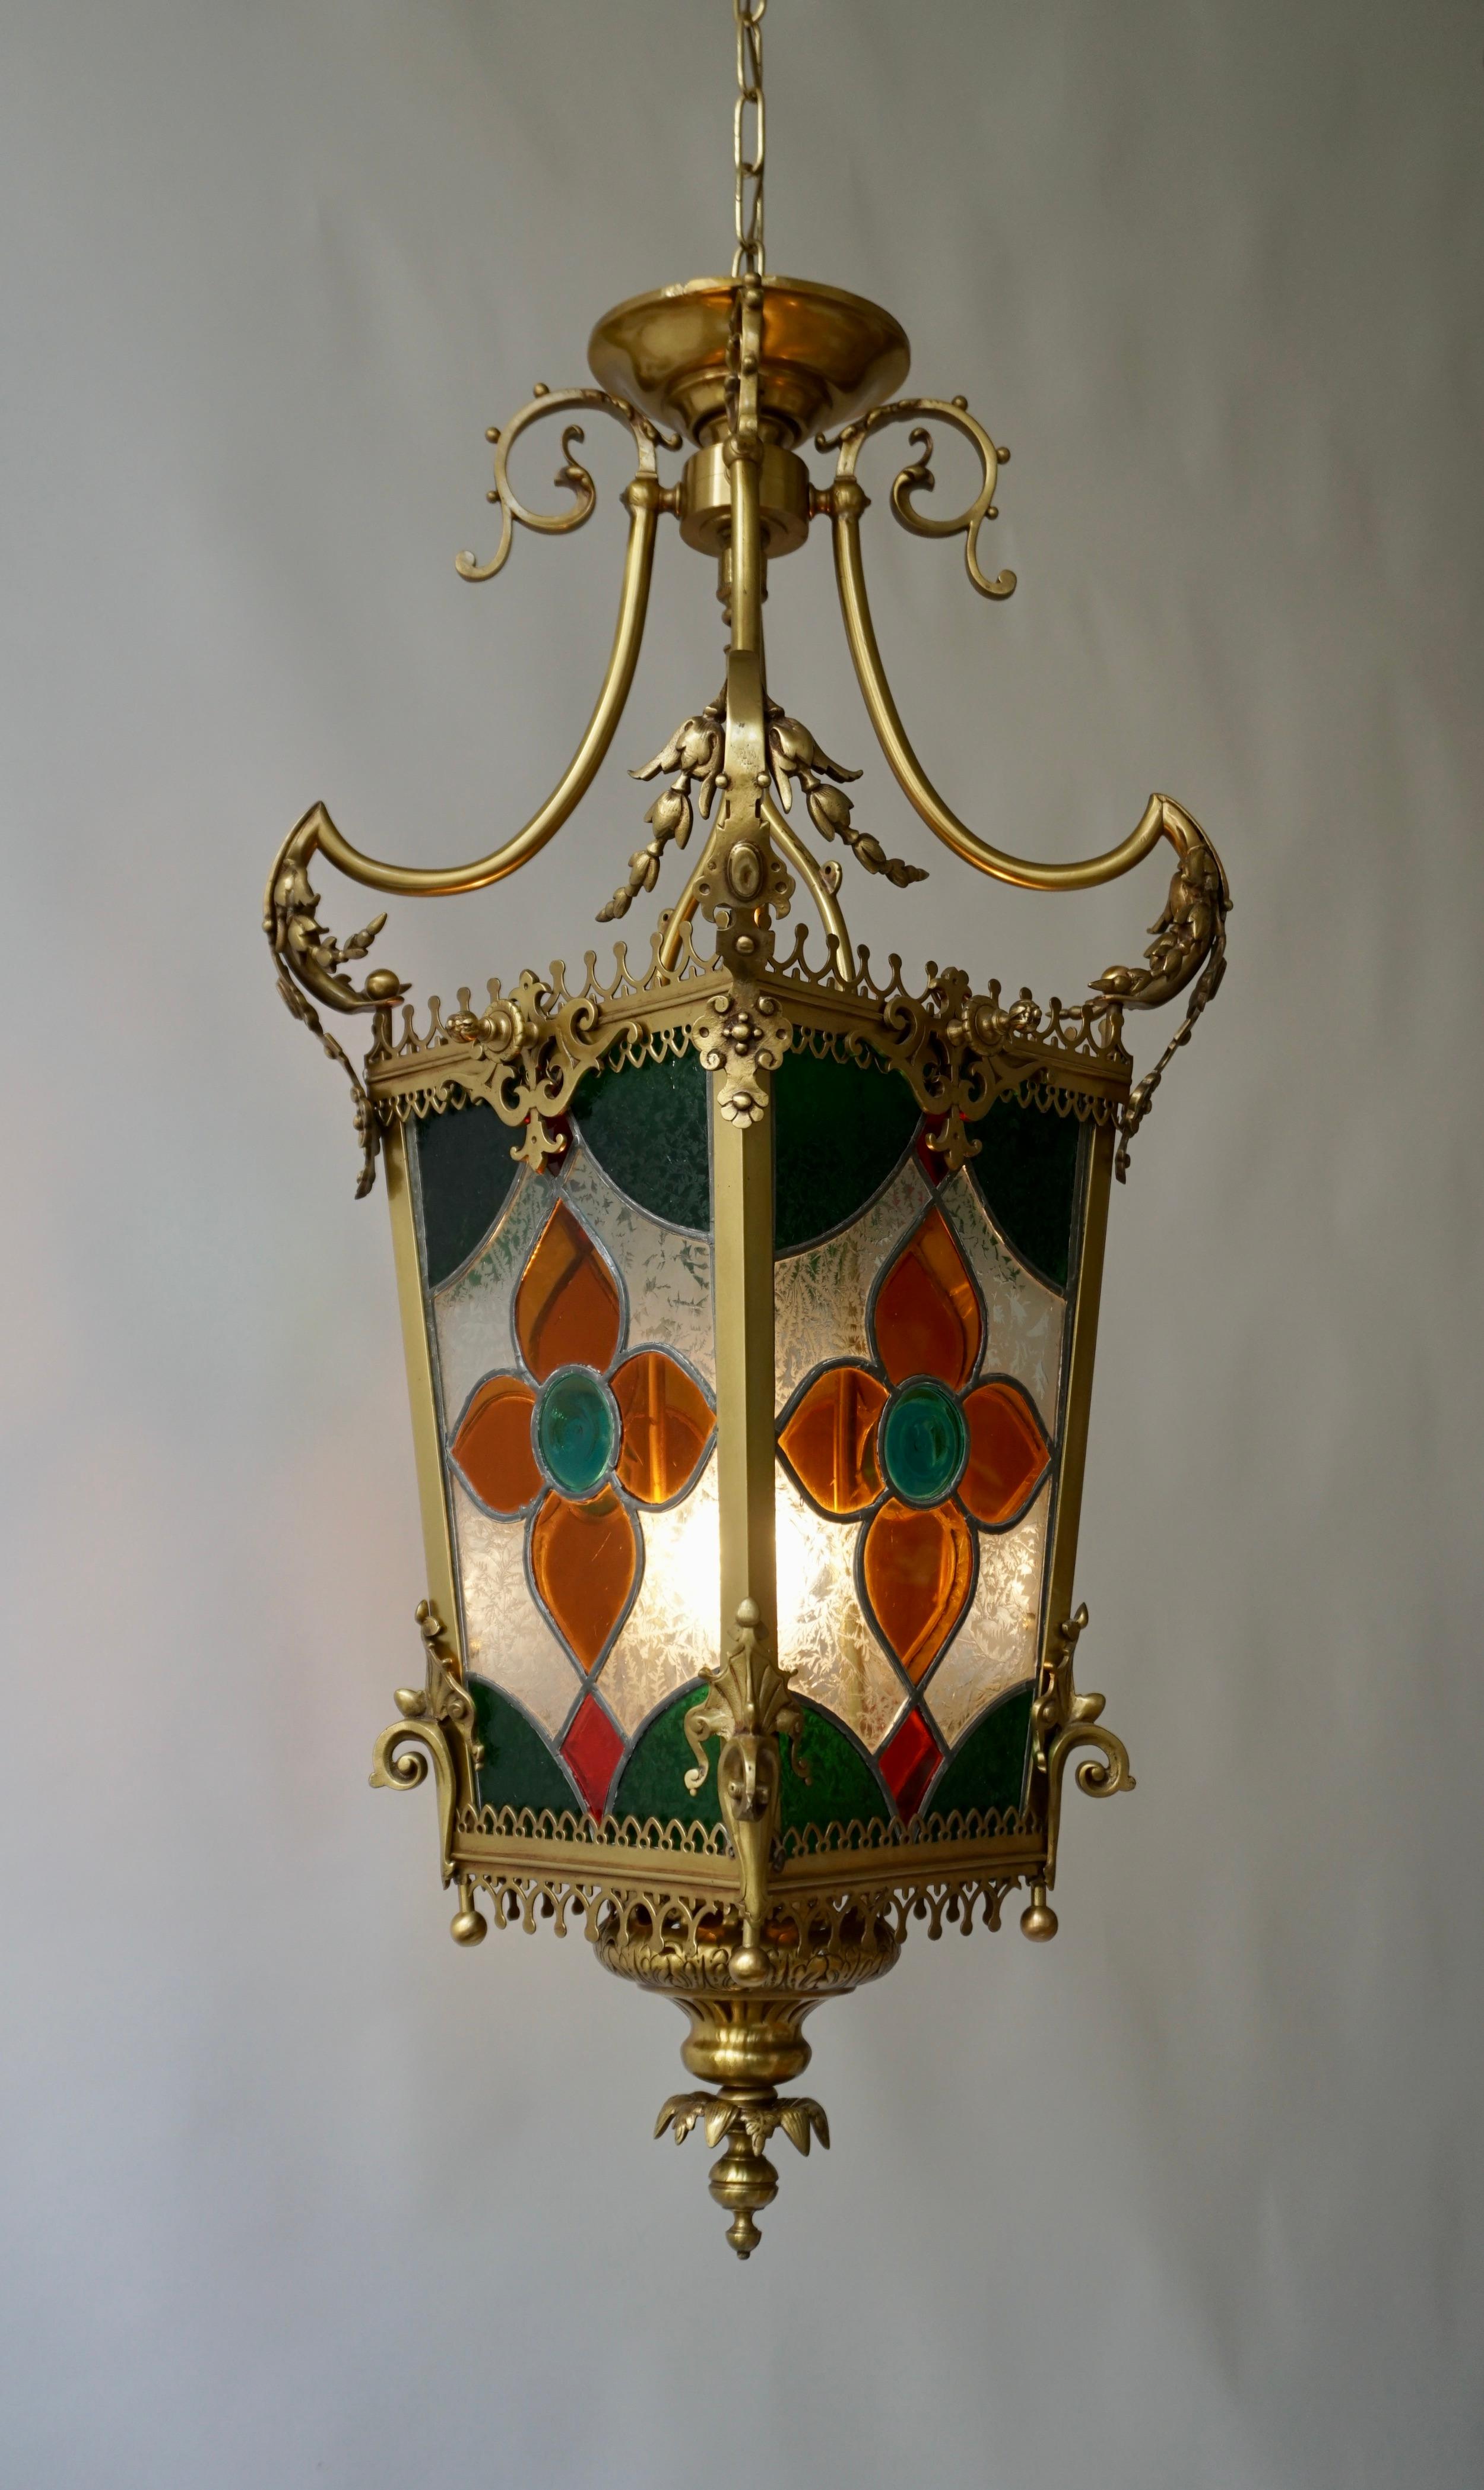 Messing-Hallenlaterne aus dem 19. Jahrhundert mit originalen Buntglasscheiben. 

Die Leuchte hat eine Fassung für Glühlampen mit Schraubsockel oder LEDs vom Typ E27. Es ist möglich, diese Leuchte in allen Ländern (USA, Großbritannien, Europa, Asien,